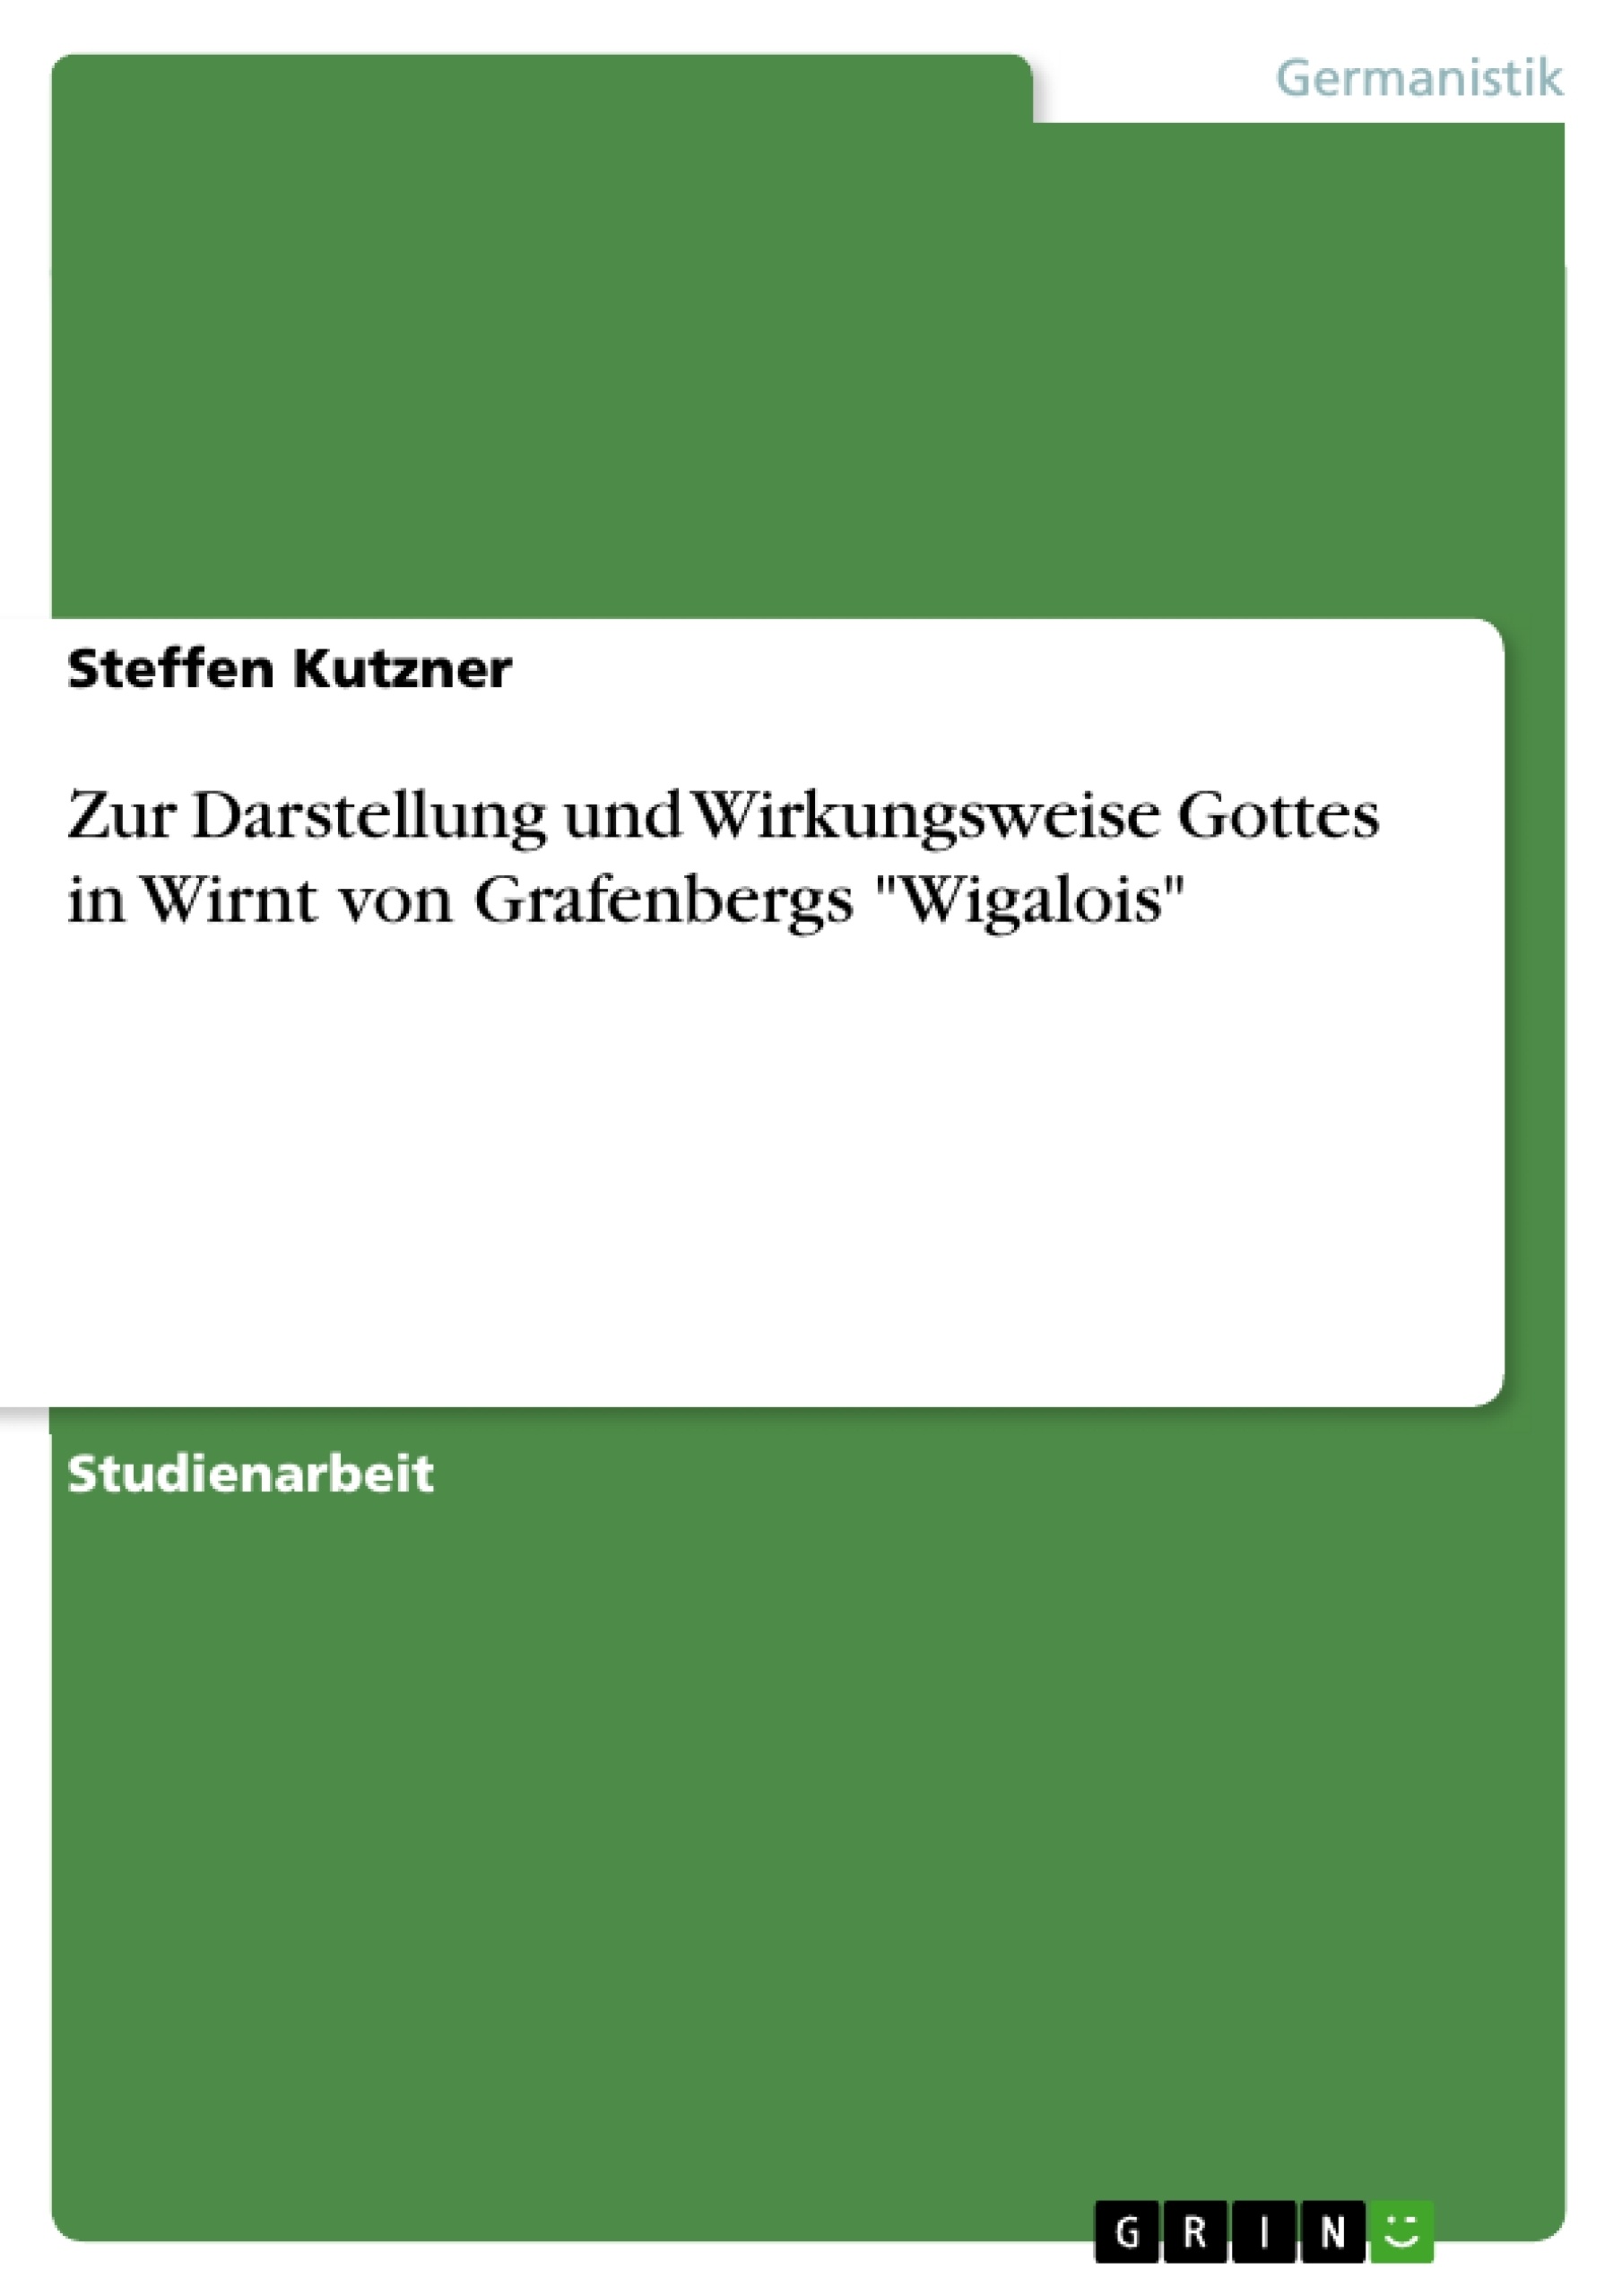 Titre: Zur Darstellung und Wirkungsweise Gottes in Wirnt von Grafenbergs "Wigalois"